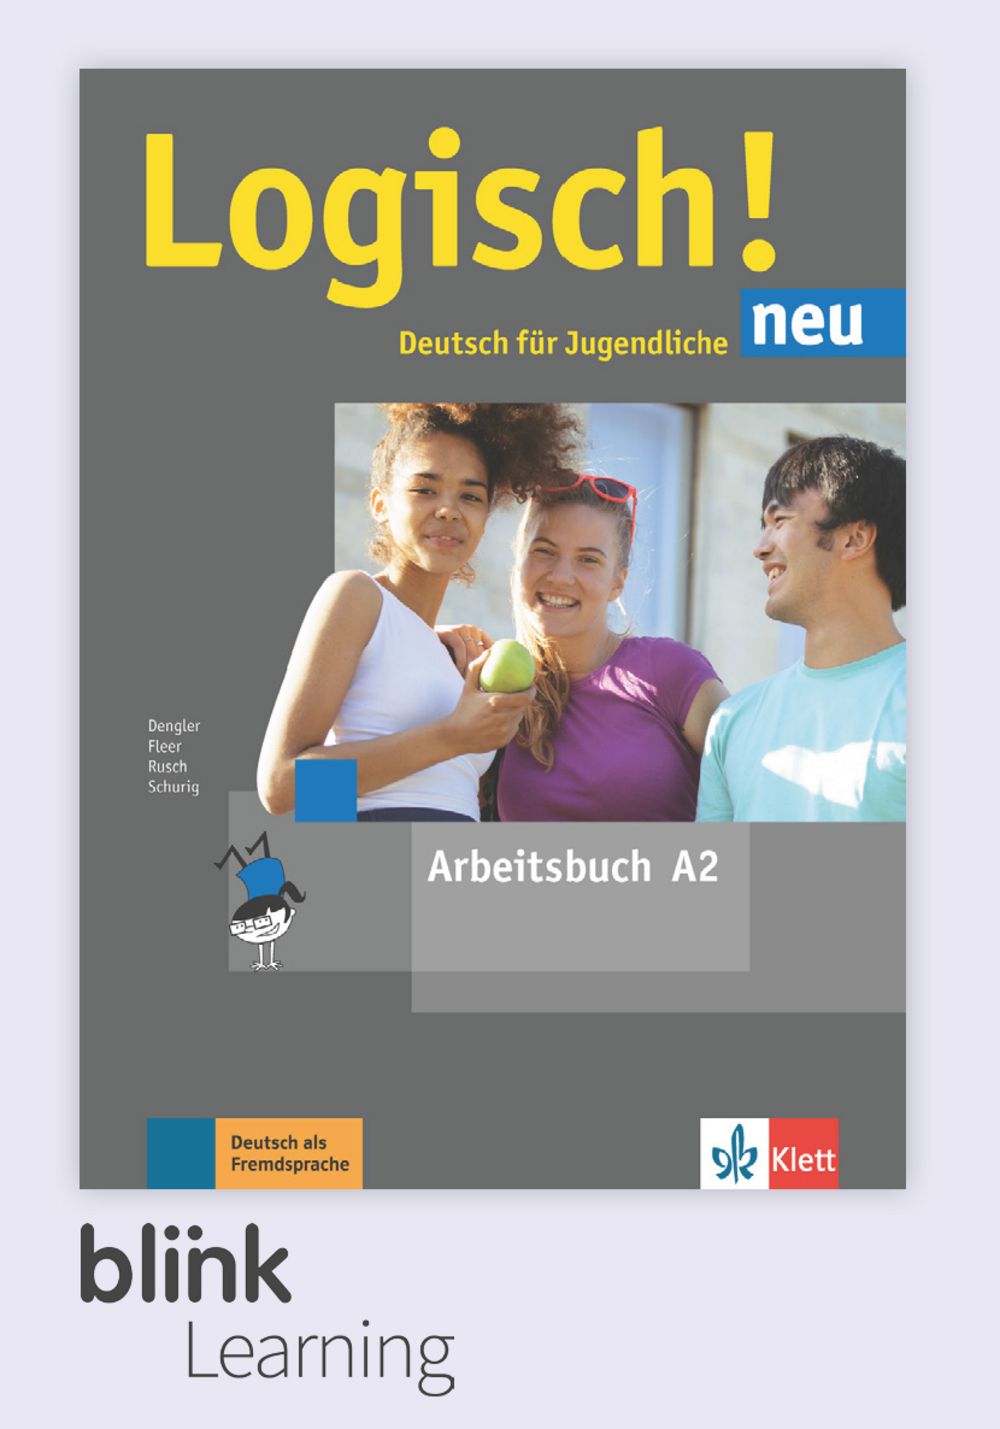 Logisch! neu A2 Digital Arbeitsbuch fur Unterrichtende / Цифровая рабочая тетрадь для учителя